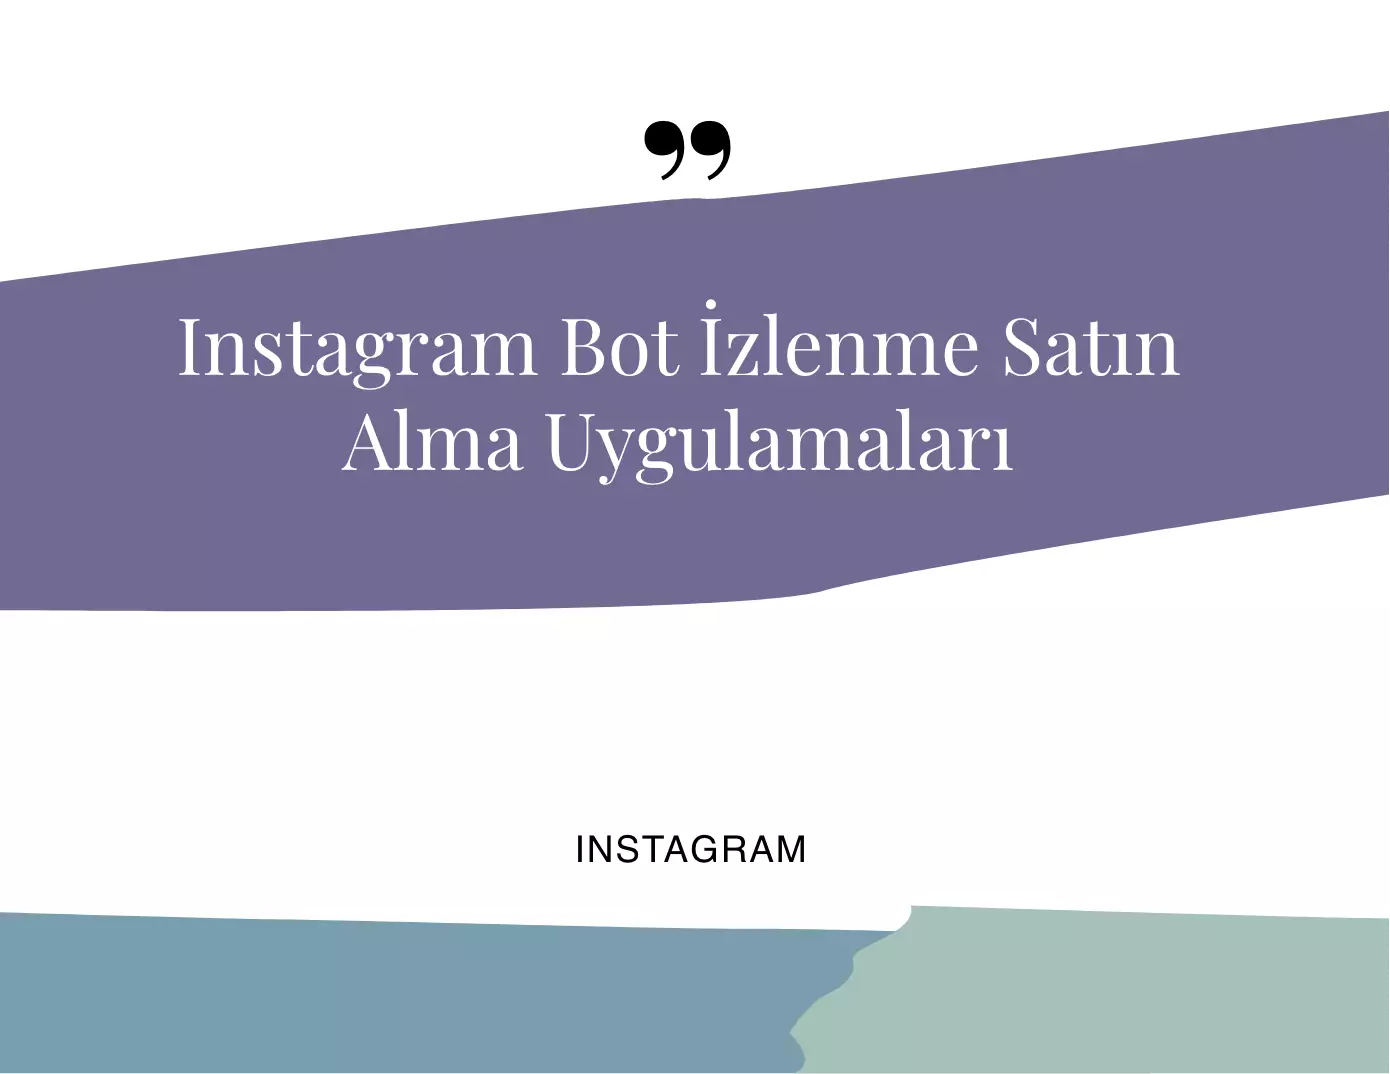 Instagram Bot İzlenme Satın Alma Uygulamaları